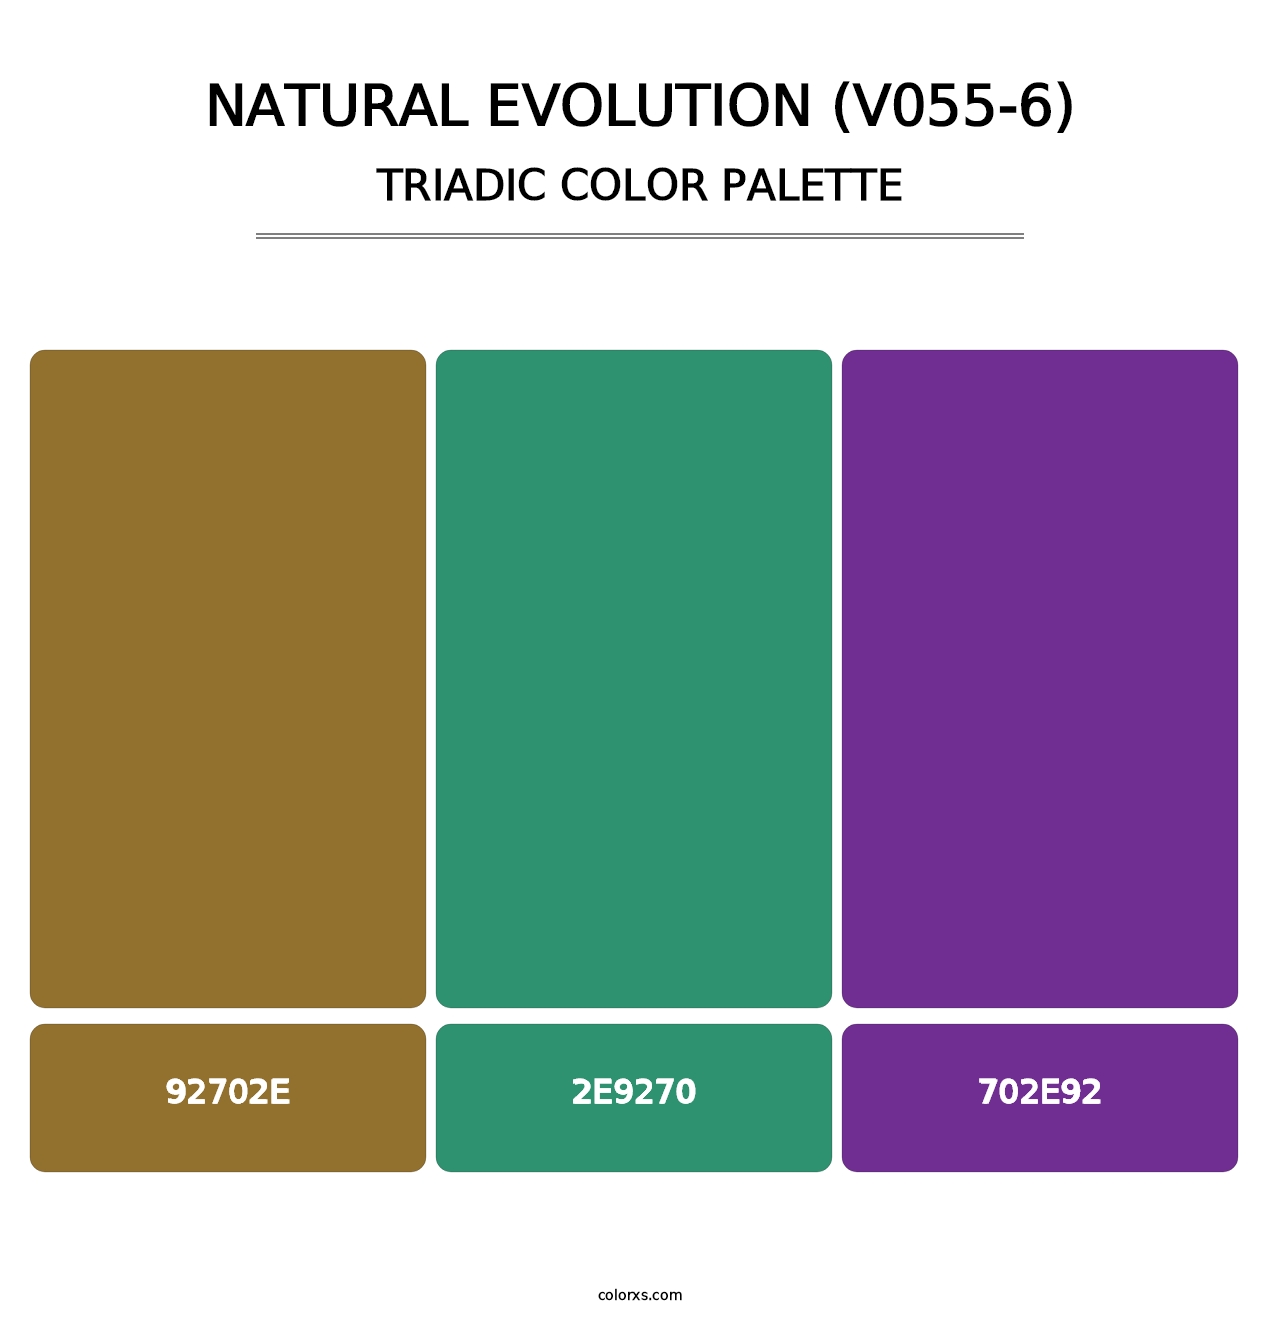 Natural Evolution (V055-6) - Triadic Color Palette